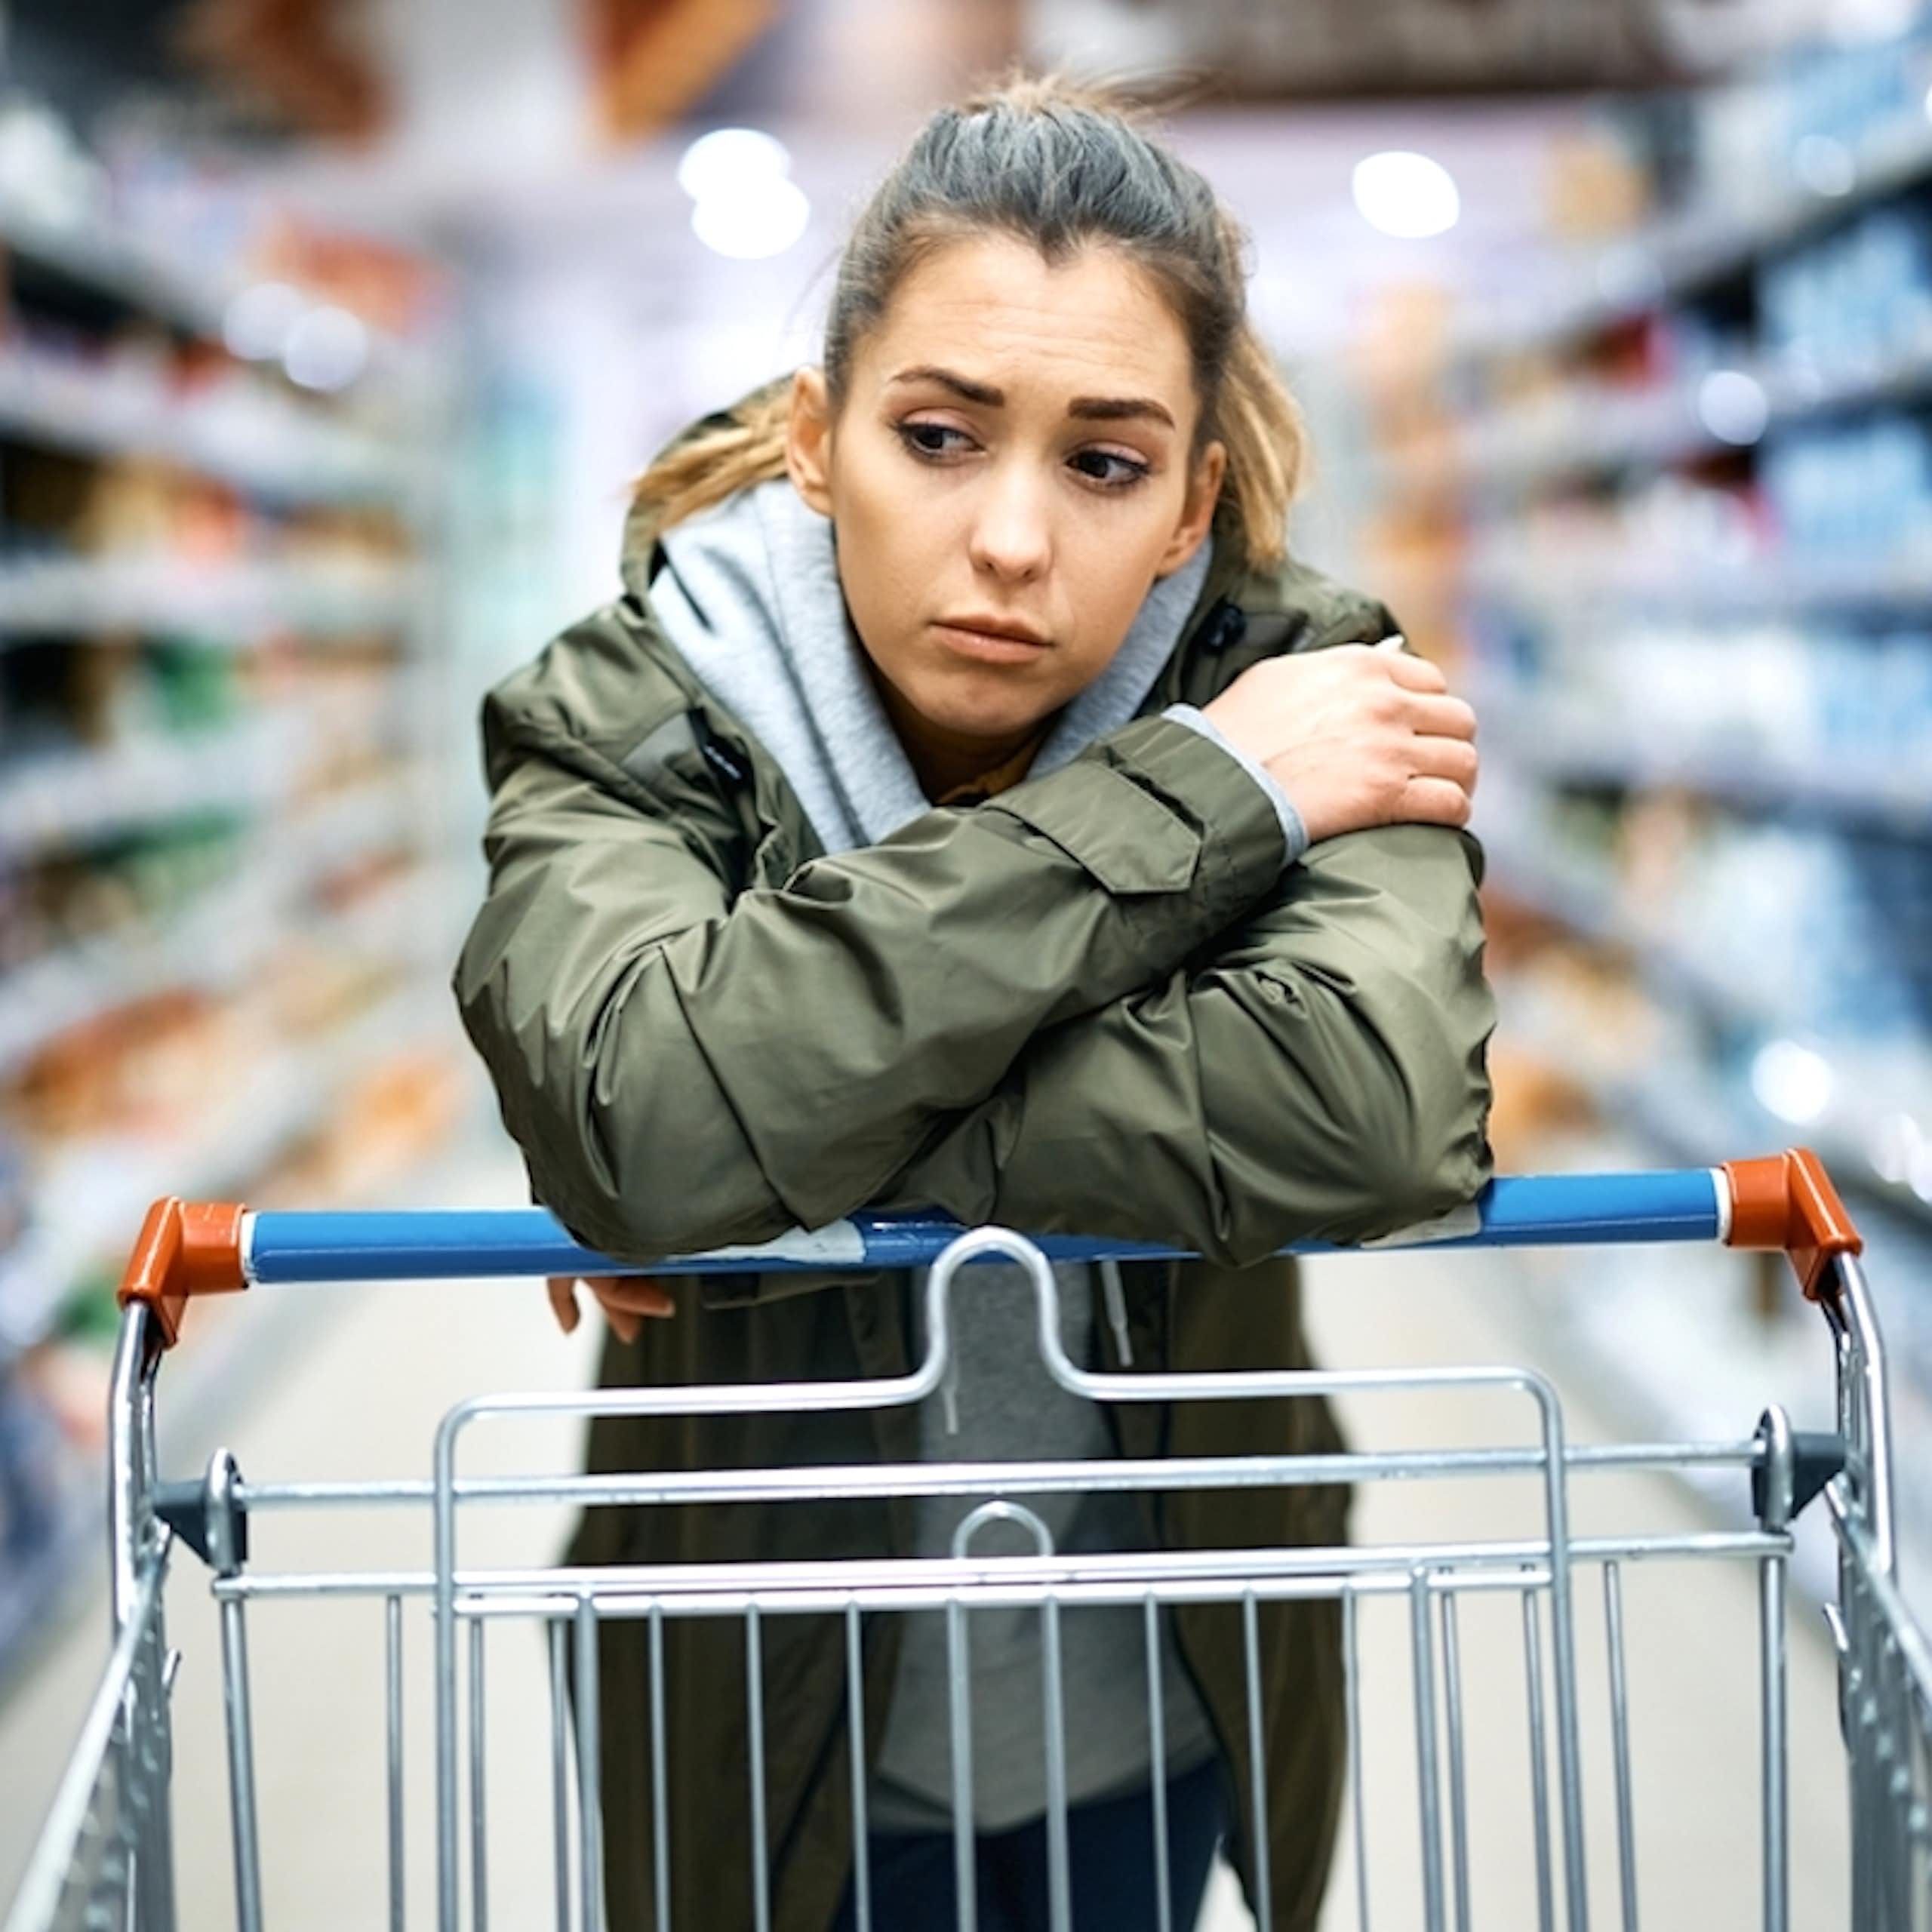 Jeune femme sceptique dans un rayon de supermarché.